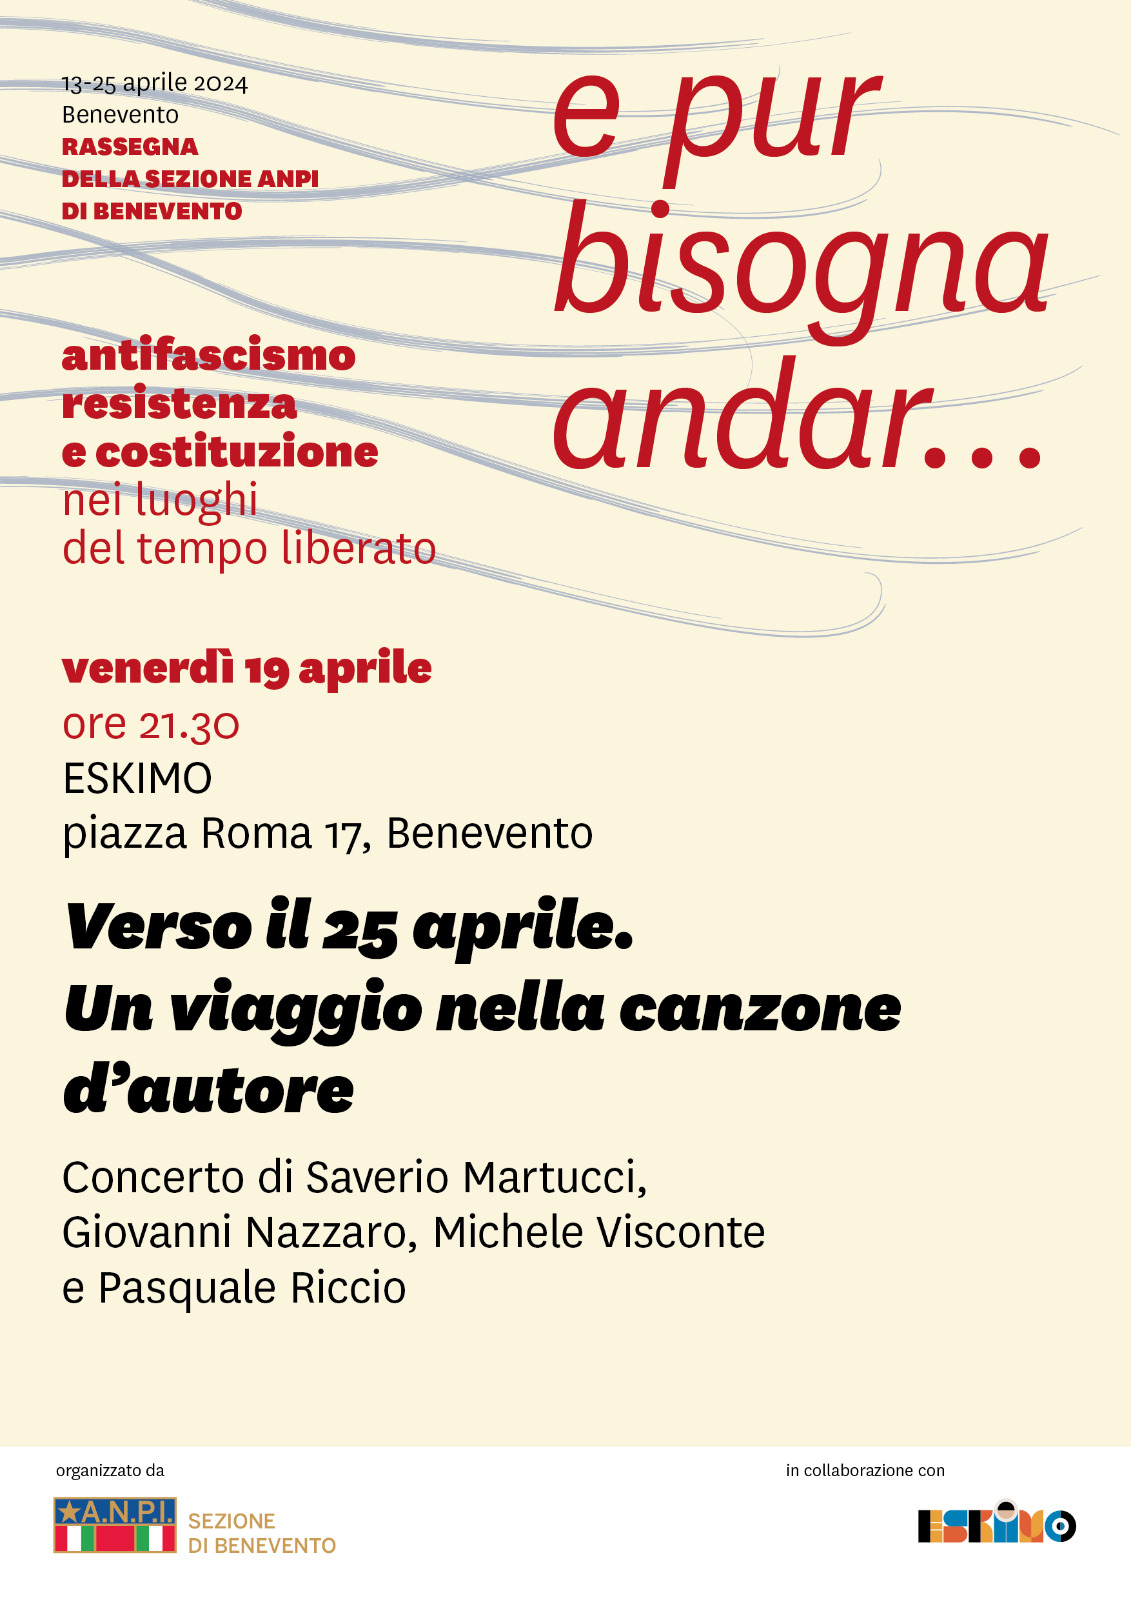 Concerto dell’ANPI di Benevento in piazza Roma venerdì 19 aprile